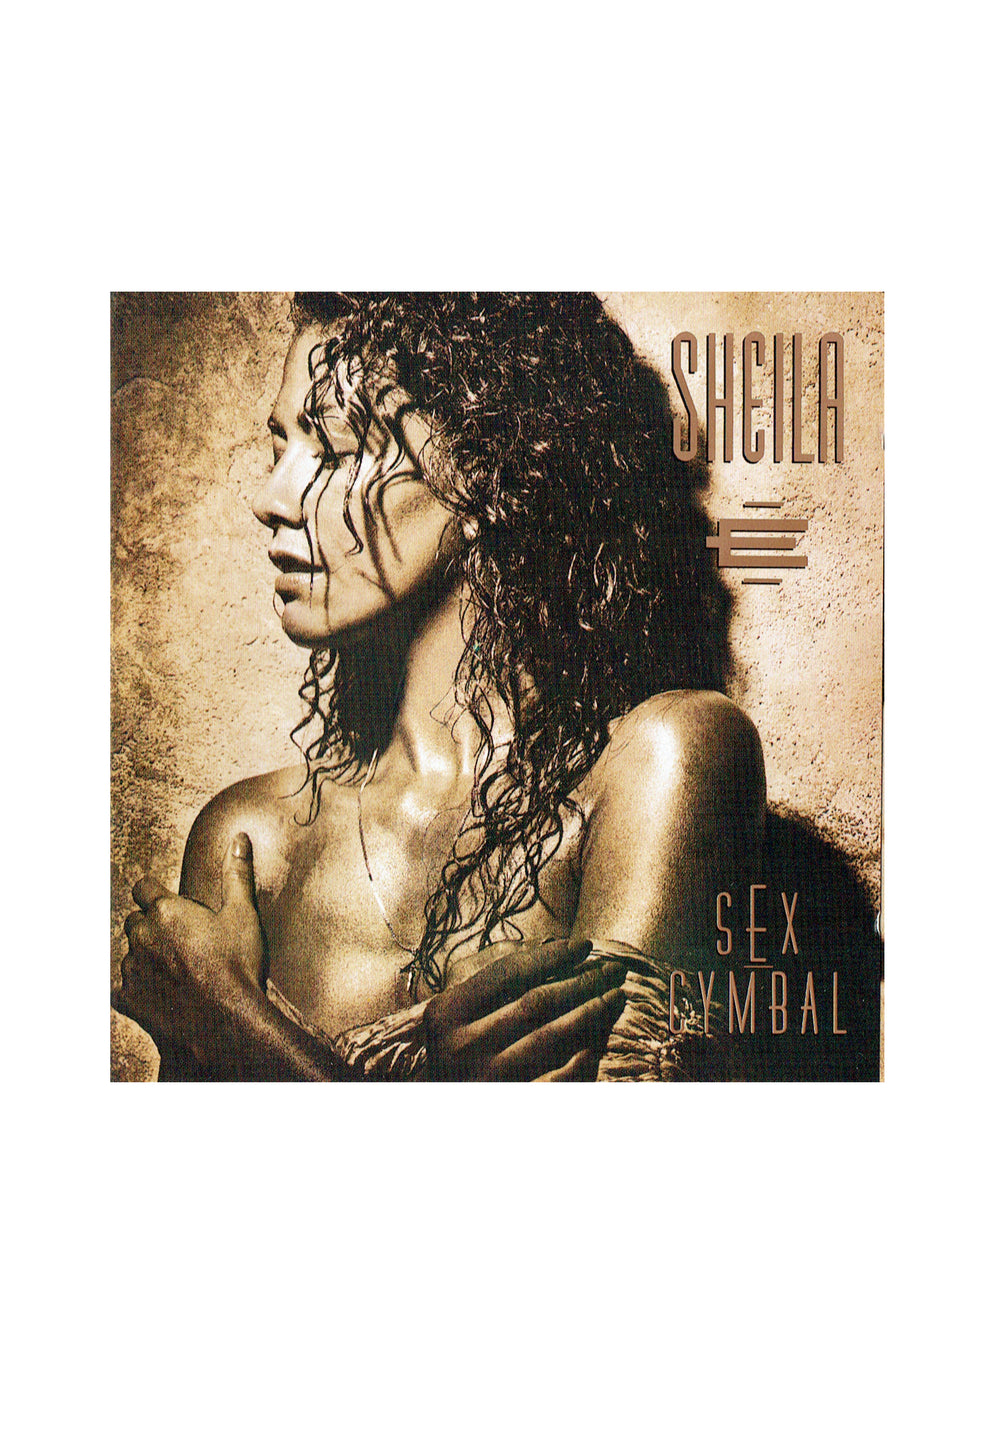 Prince – Sheila E Sex Cymbal CD Album EU Preloved: 1991